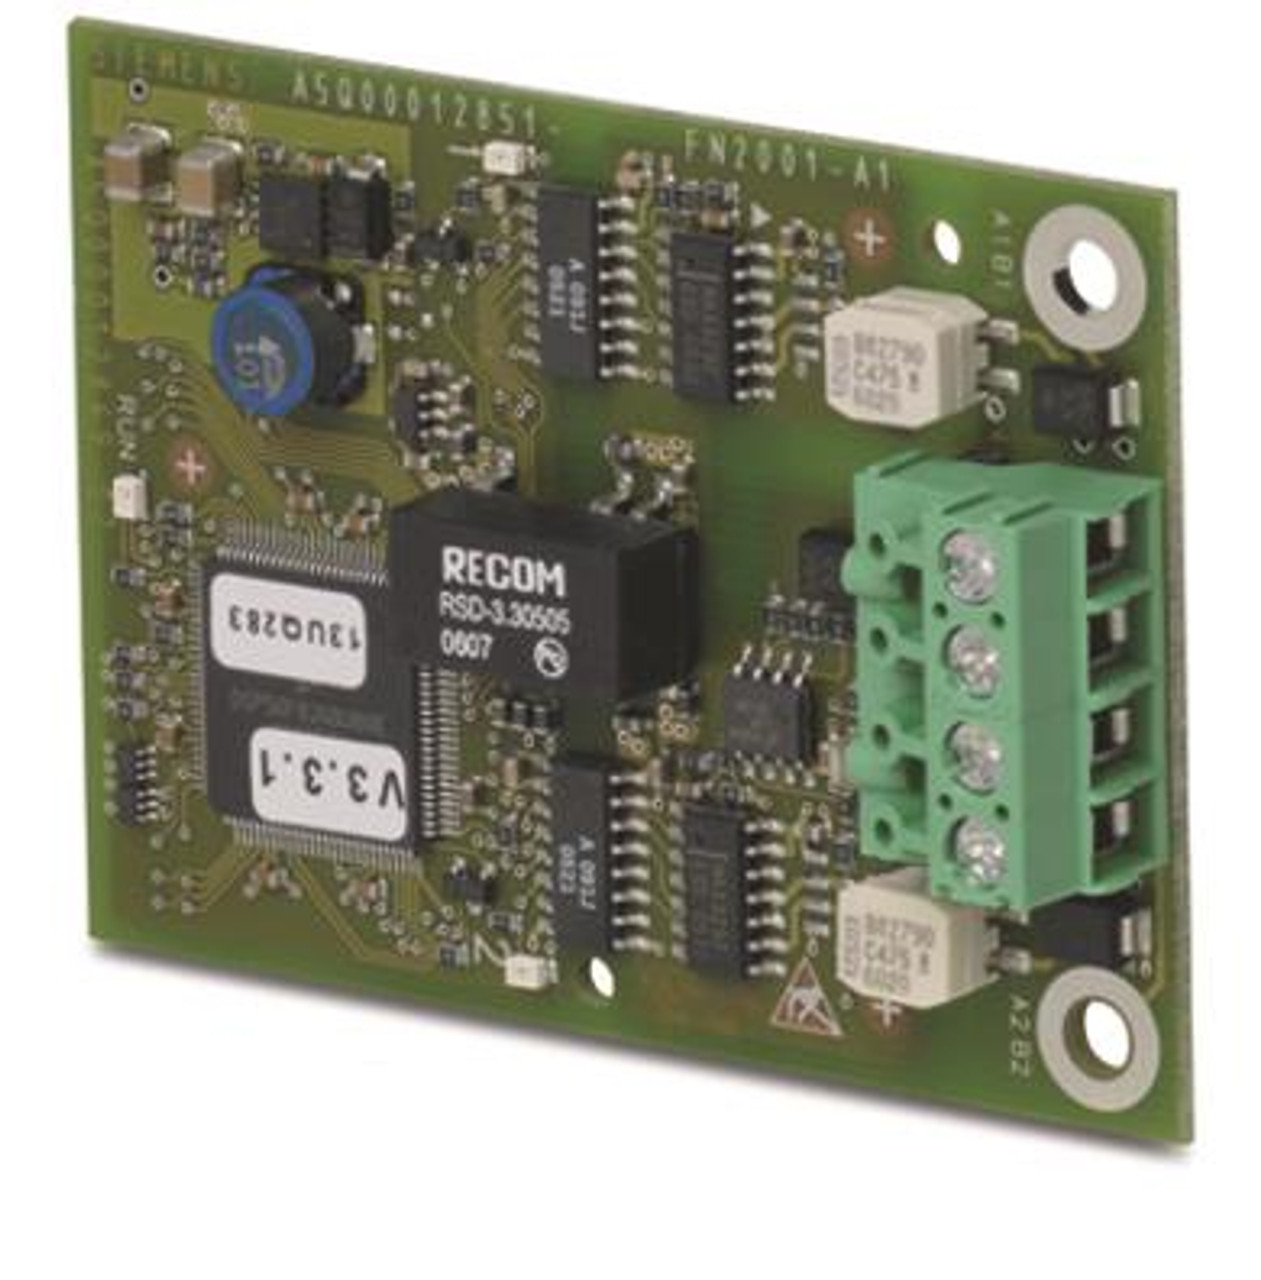 Siemens FN2001-A1, A5Q00012851 Network module